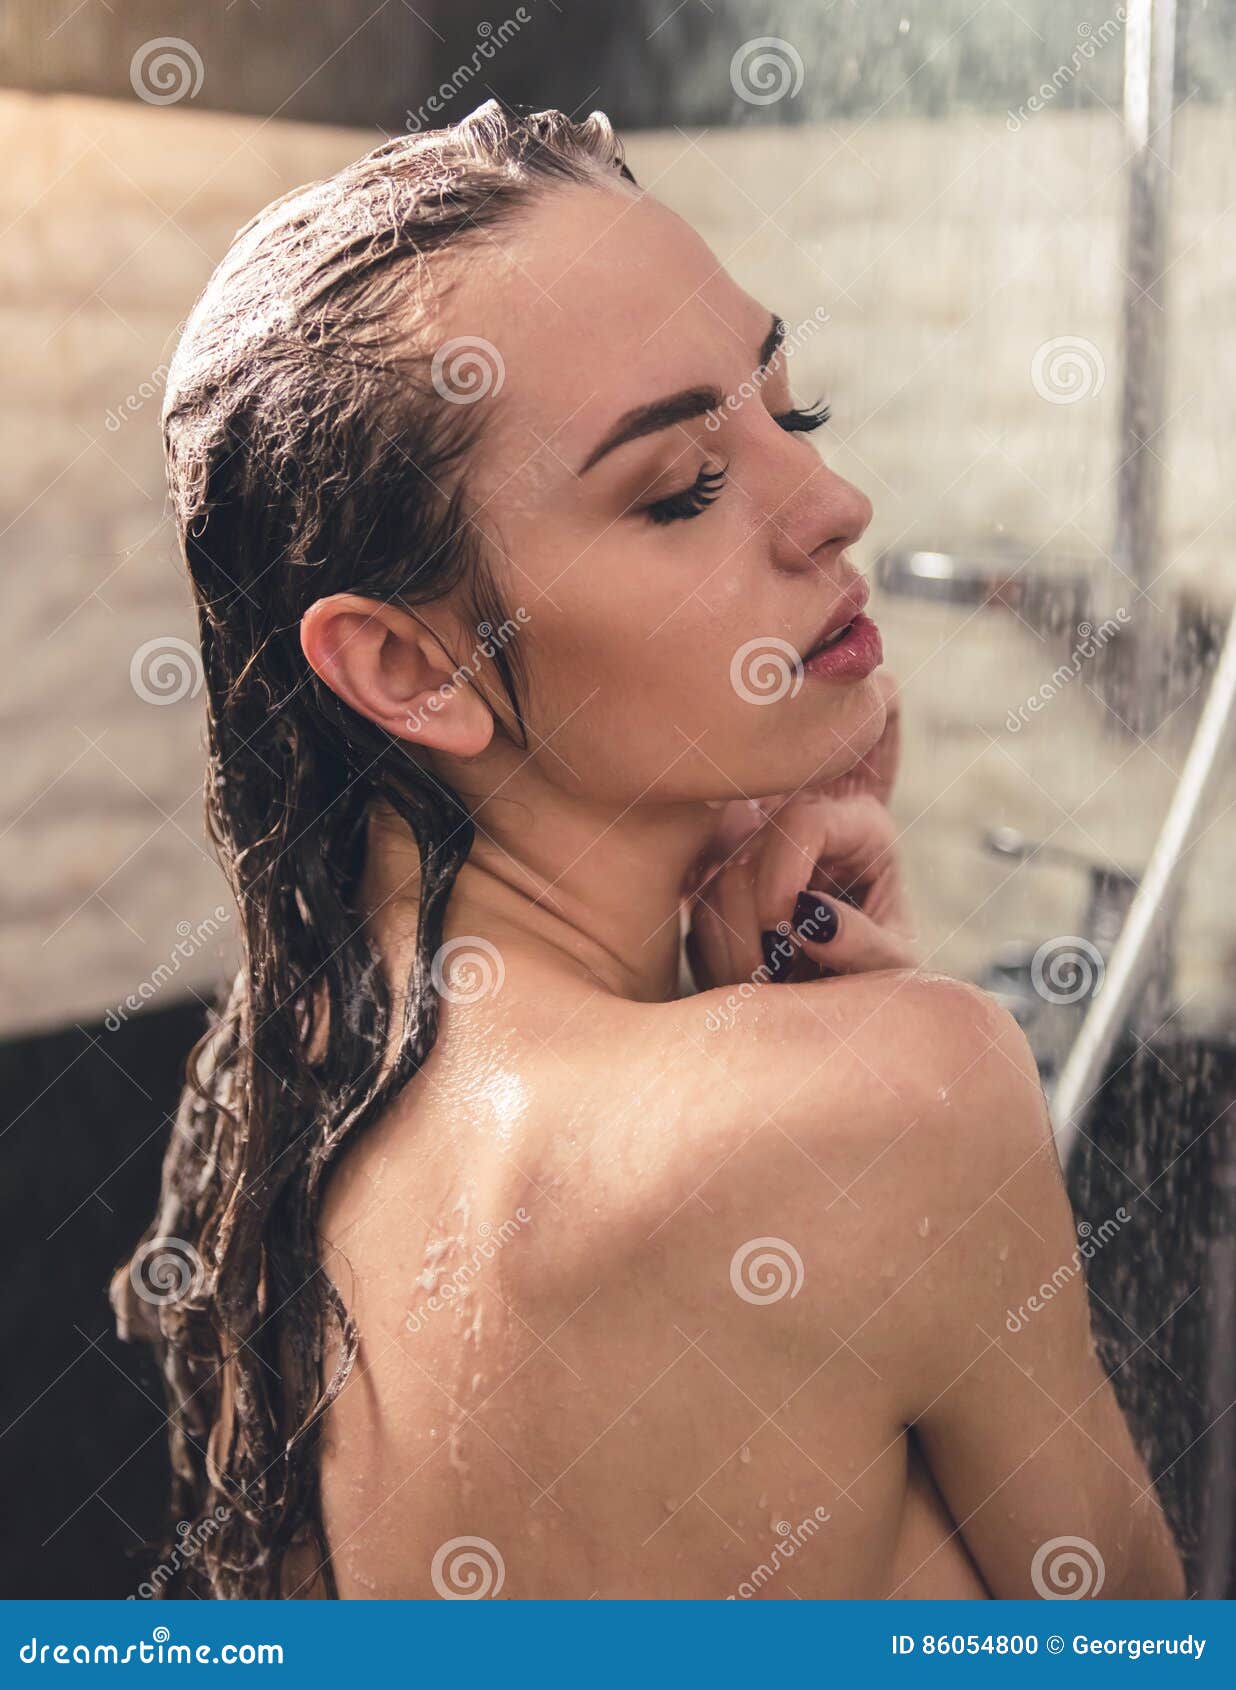 Naked Teen Girls In Shower